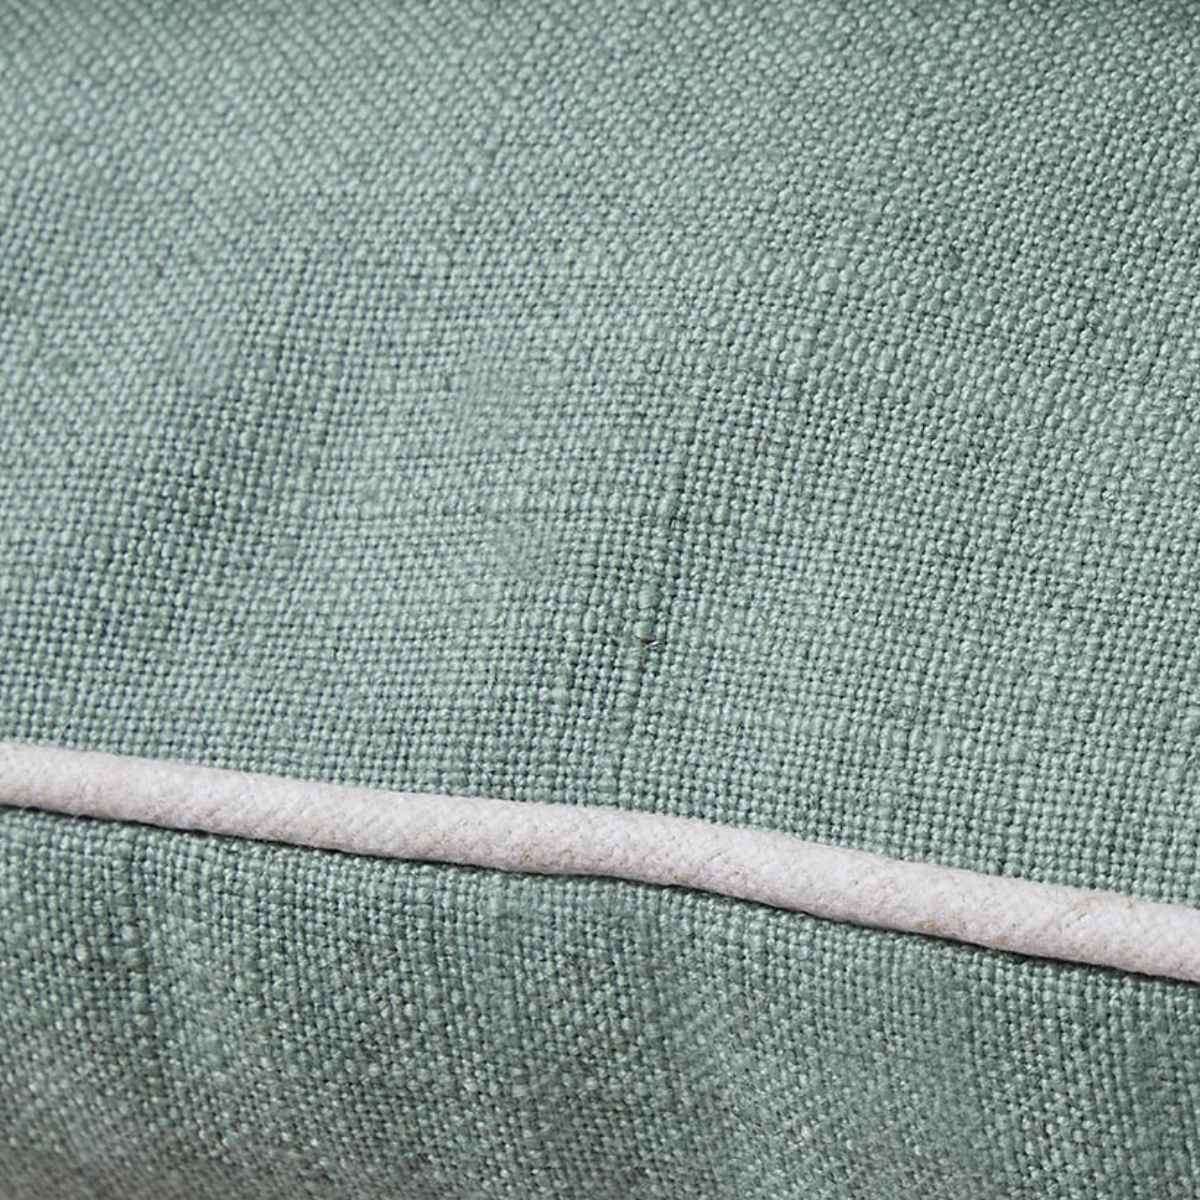 Mocka Piped Cushion - Sage/Natural